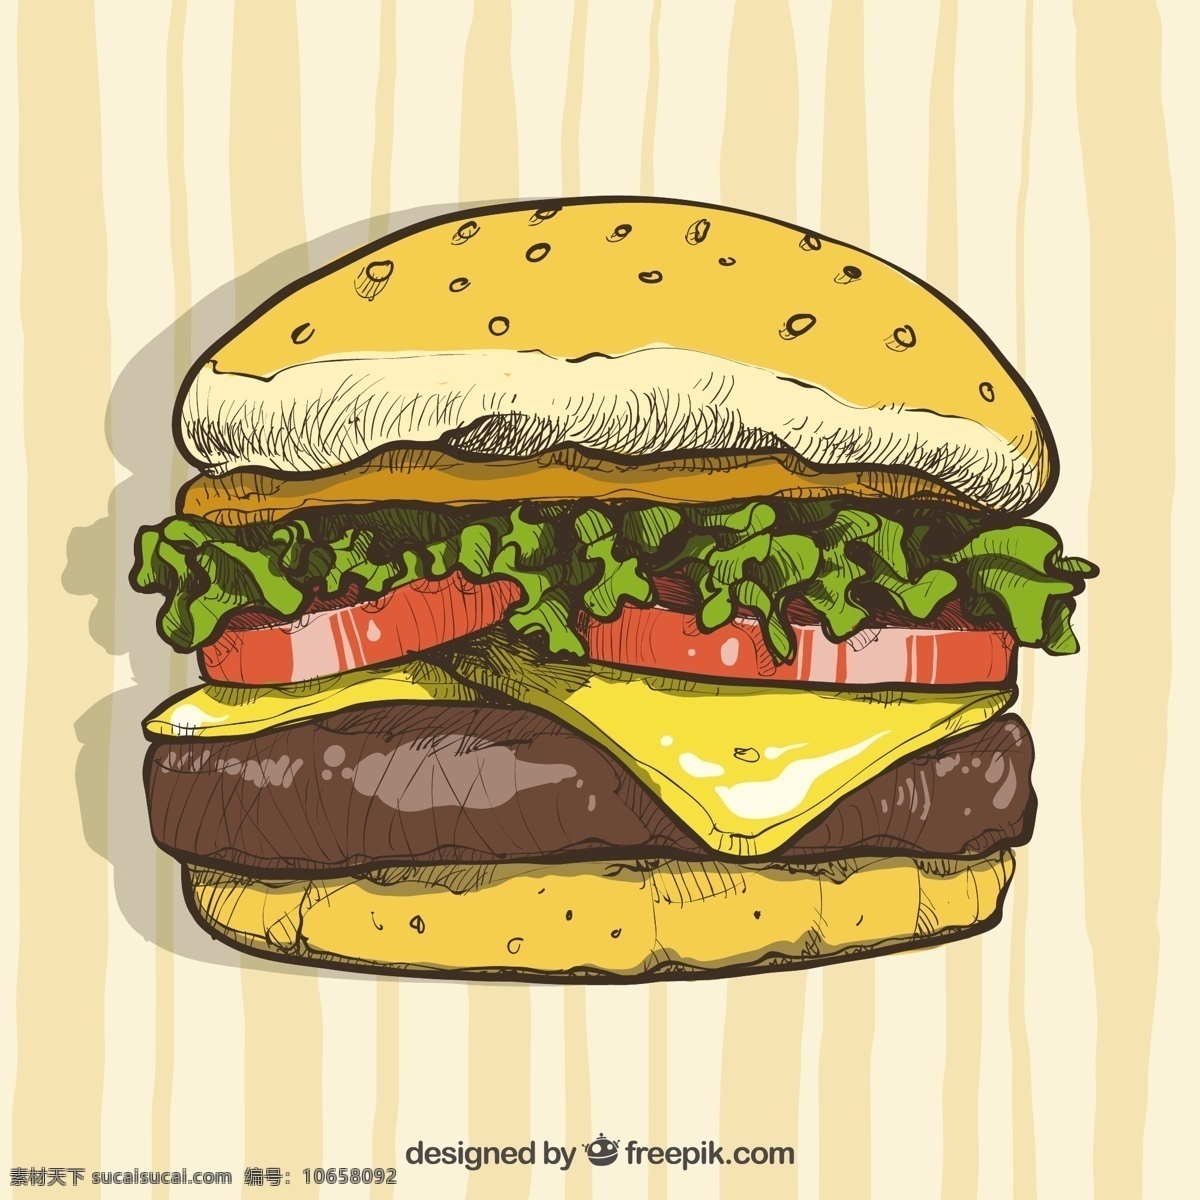 手绘 芝士 汉堡 插图 背景 芝士汉堡 插图背景